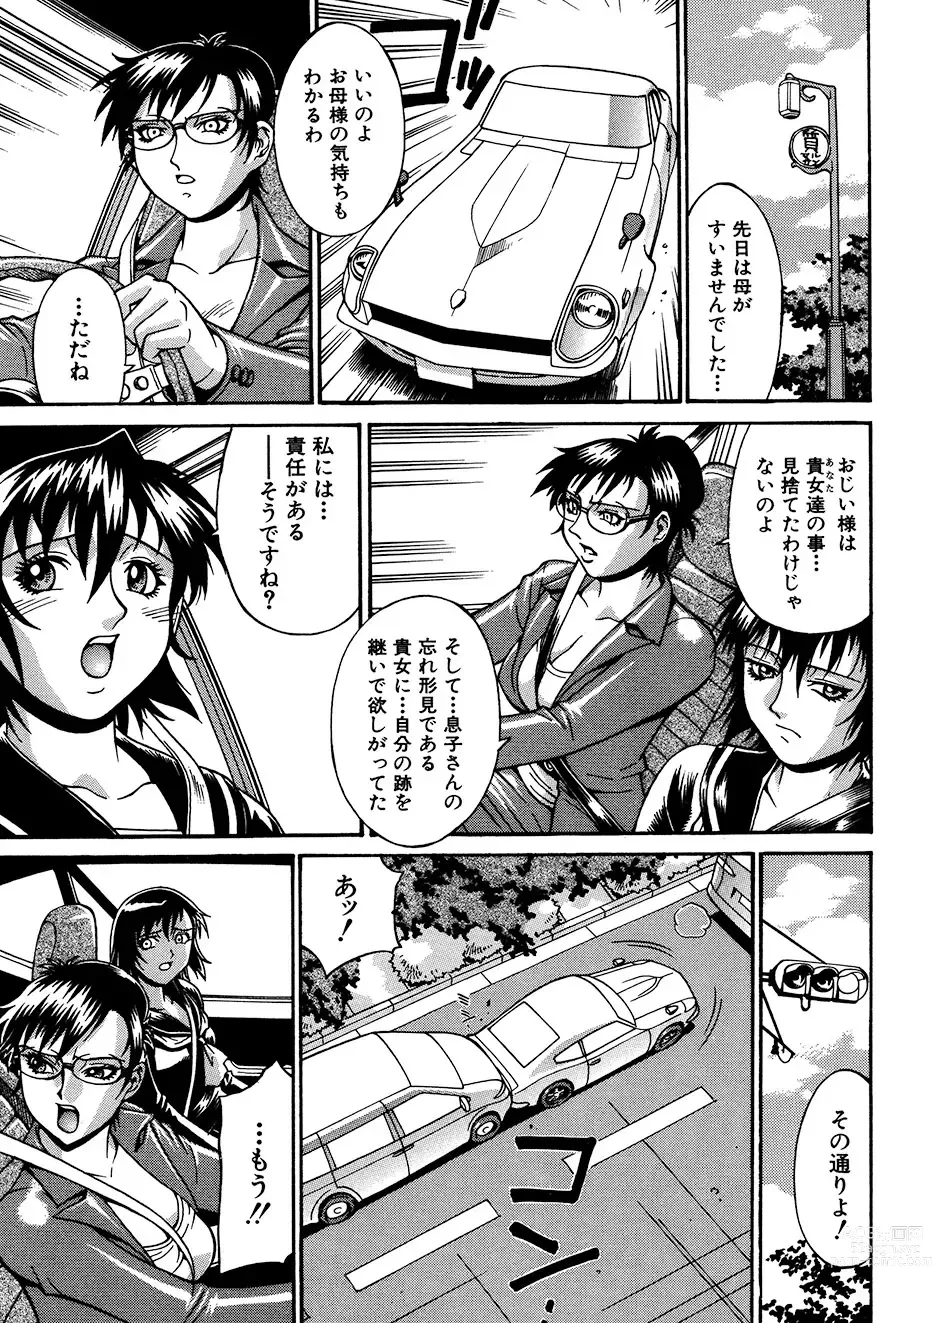 Page 28 of manga Mechiku